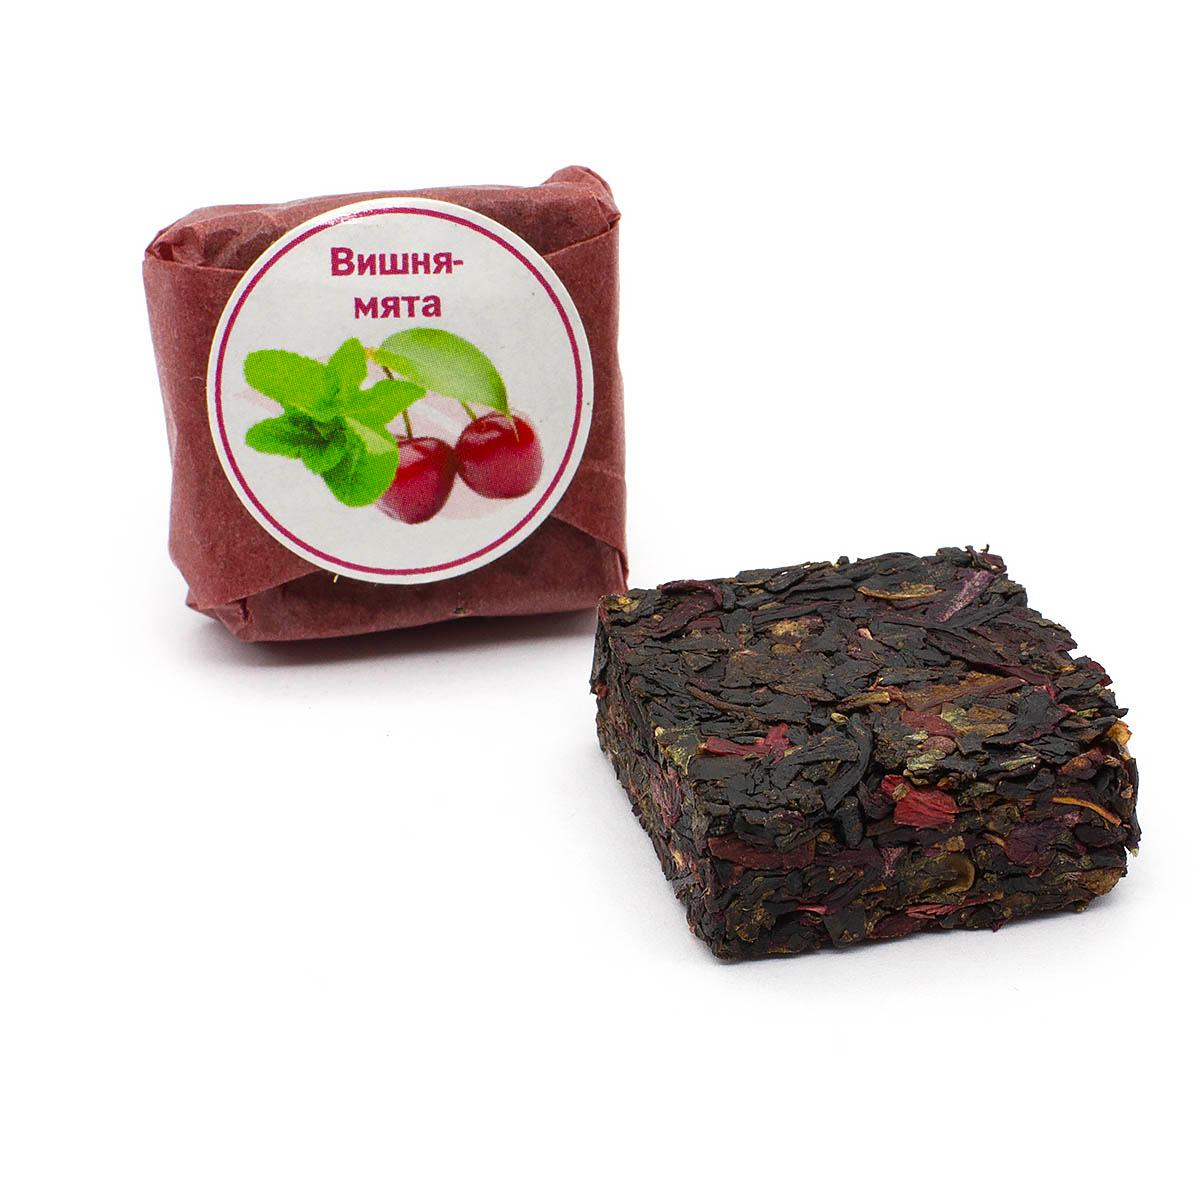 Чай фруктово-ягодный Вишня-мята, кубик 5-7 г